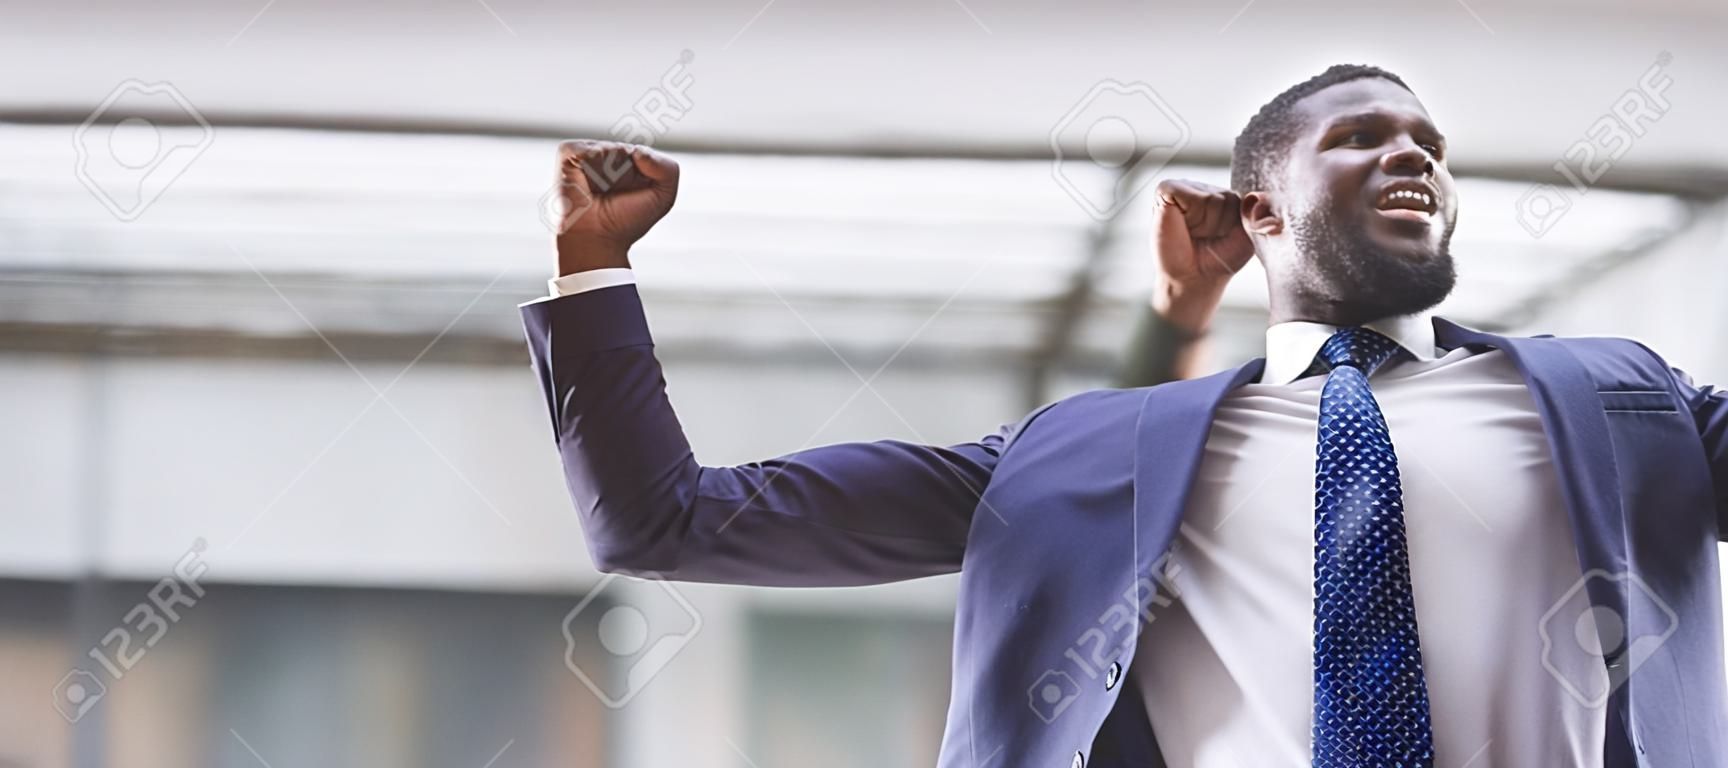 Przystojny Afroamerykanin potrząsający zaciśniętymi pięściami świętujący panoramę sukcesu biznesowego z wolną przestrzenią